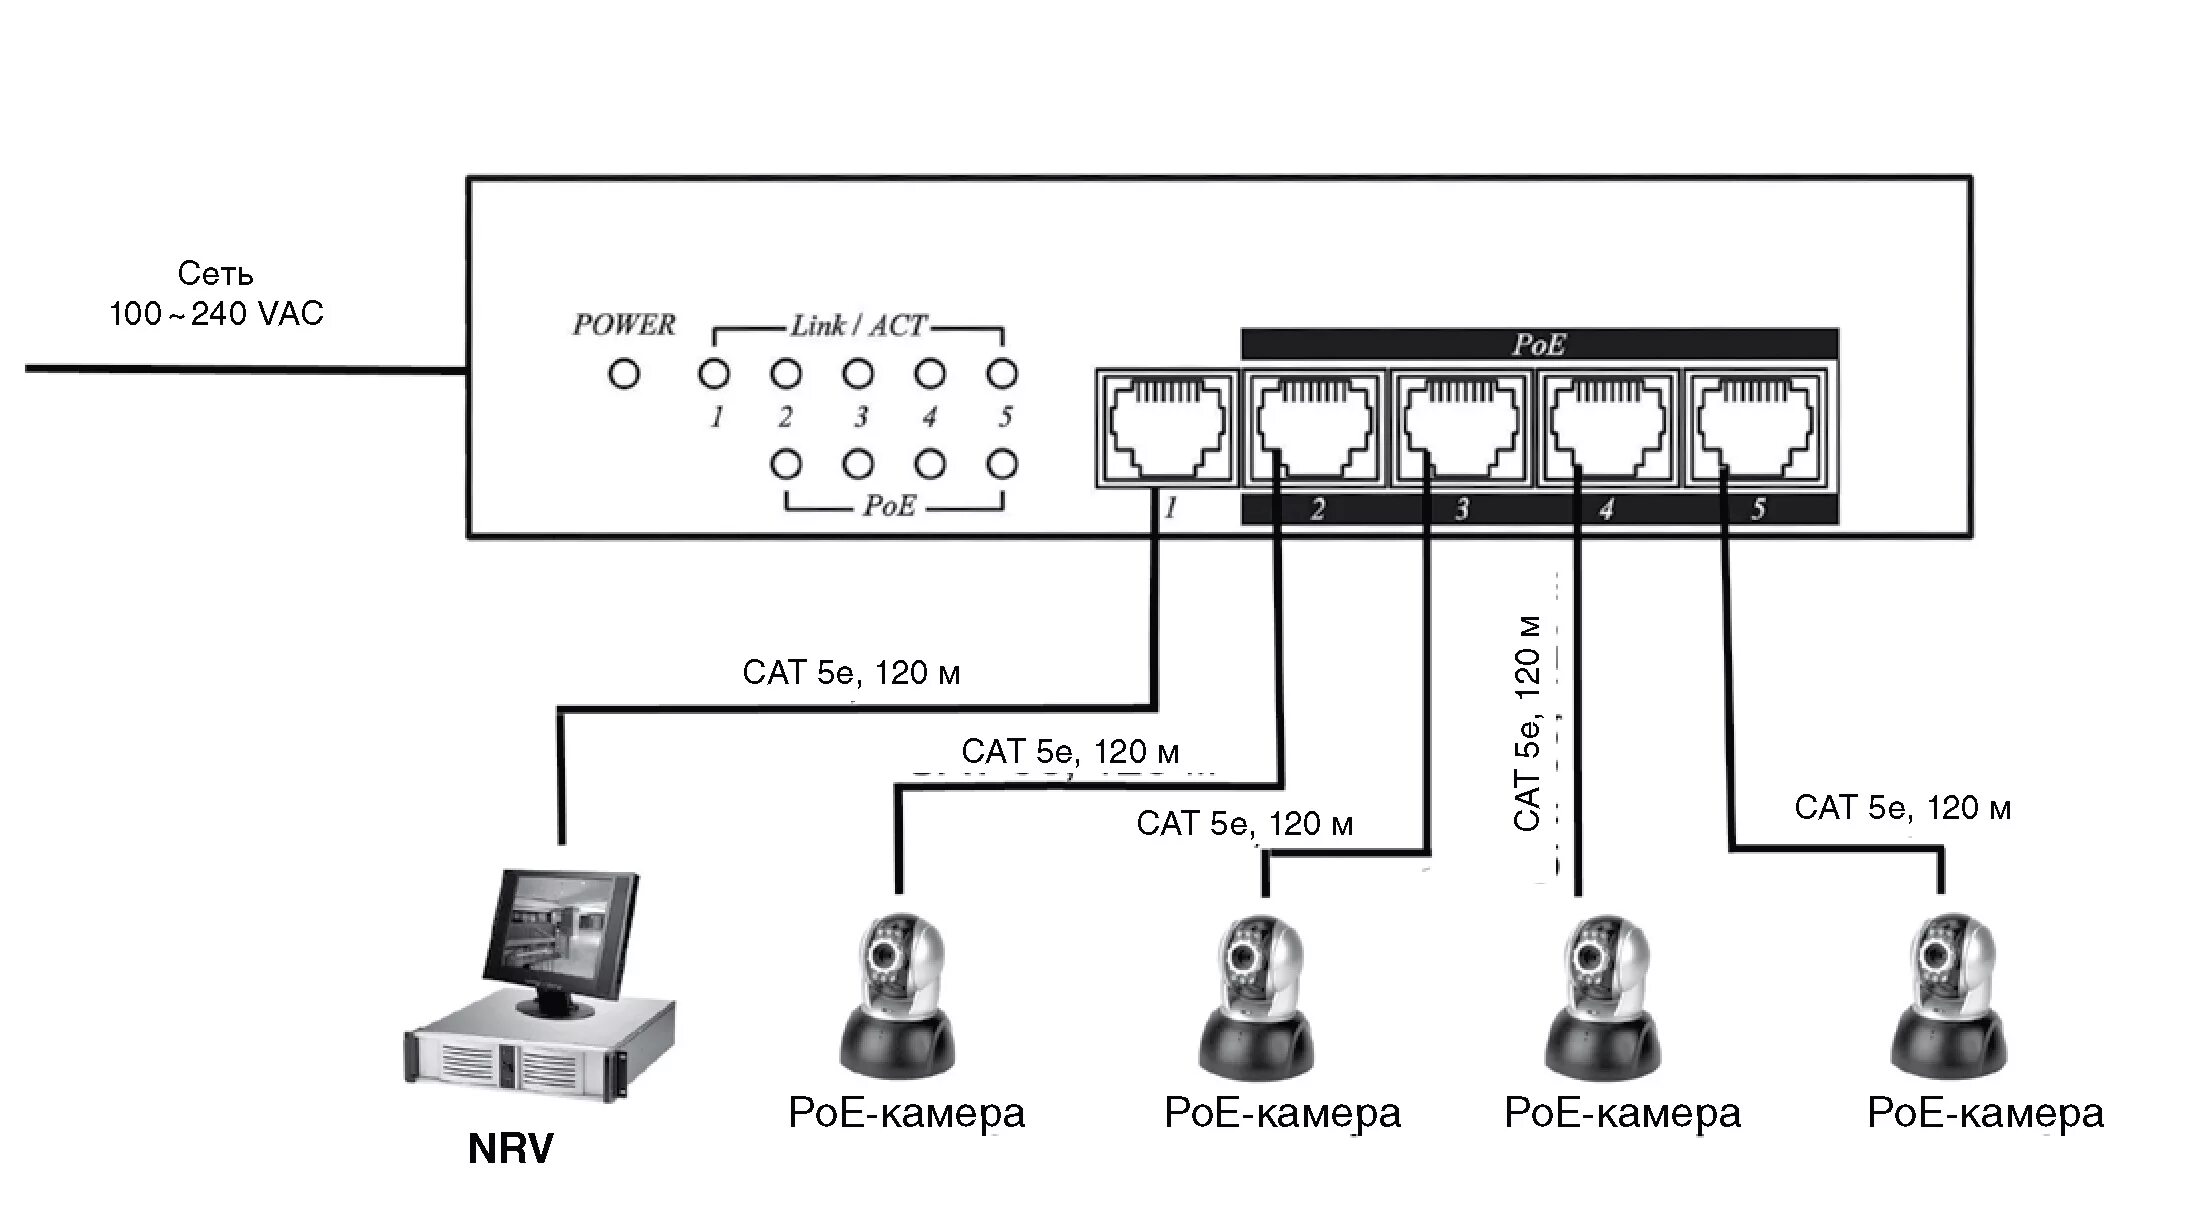 Как подключить домашнюю камеру. Коммутатор SC&T ip05h. Power over Ethernet коммутатор Порты схема подключения. Коммутатор для камер видеонаблюдения схема подключения. POE коммутатор схема подключения к сети.